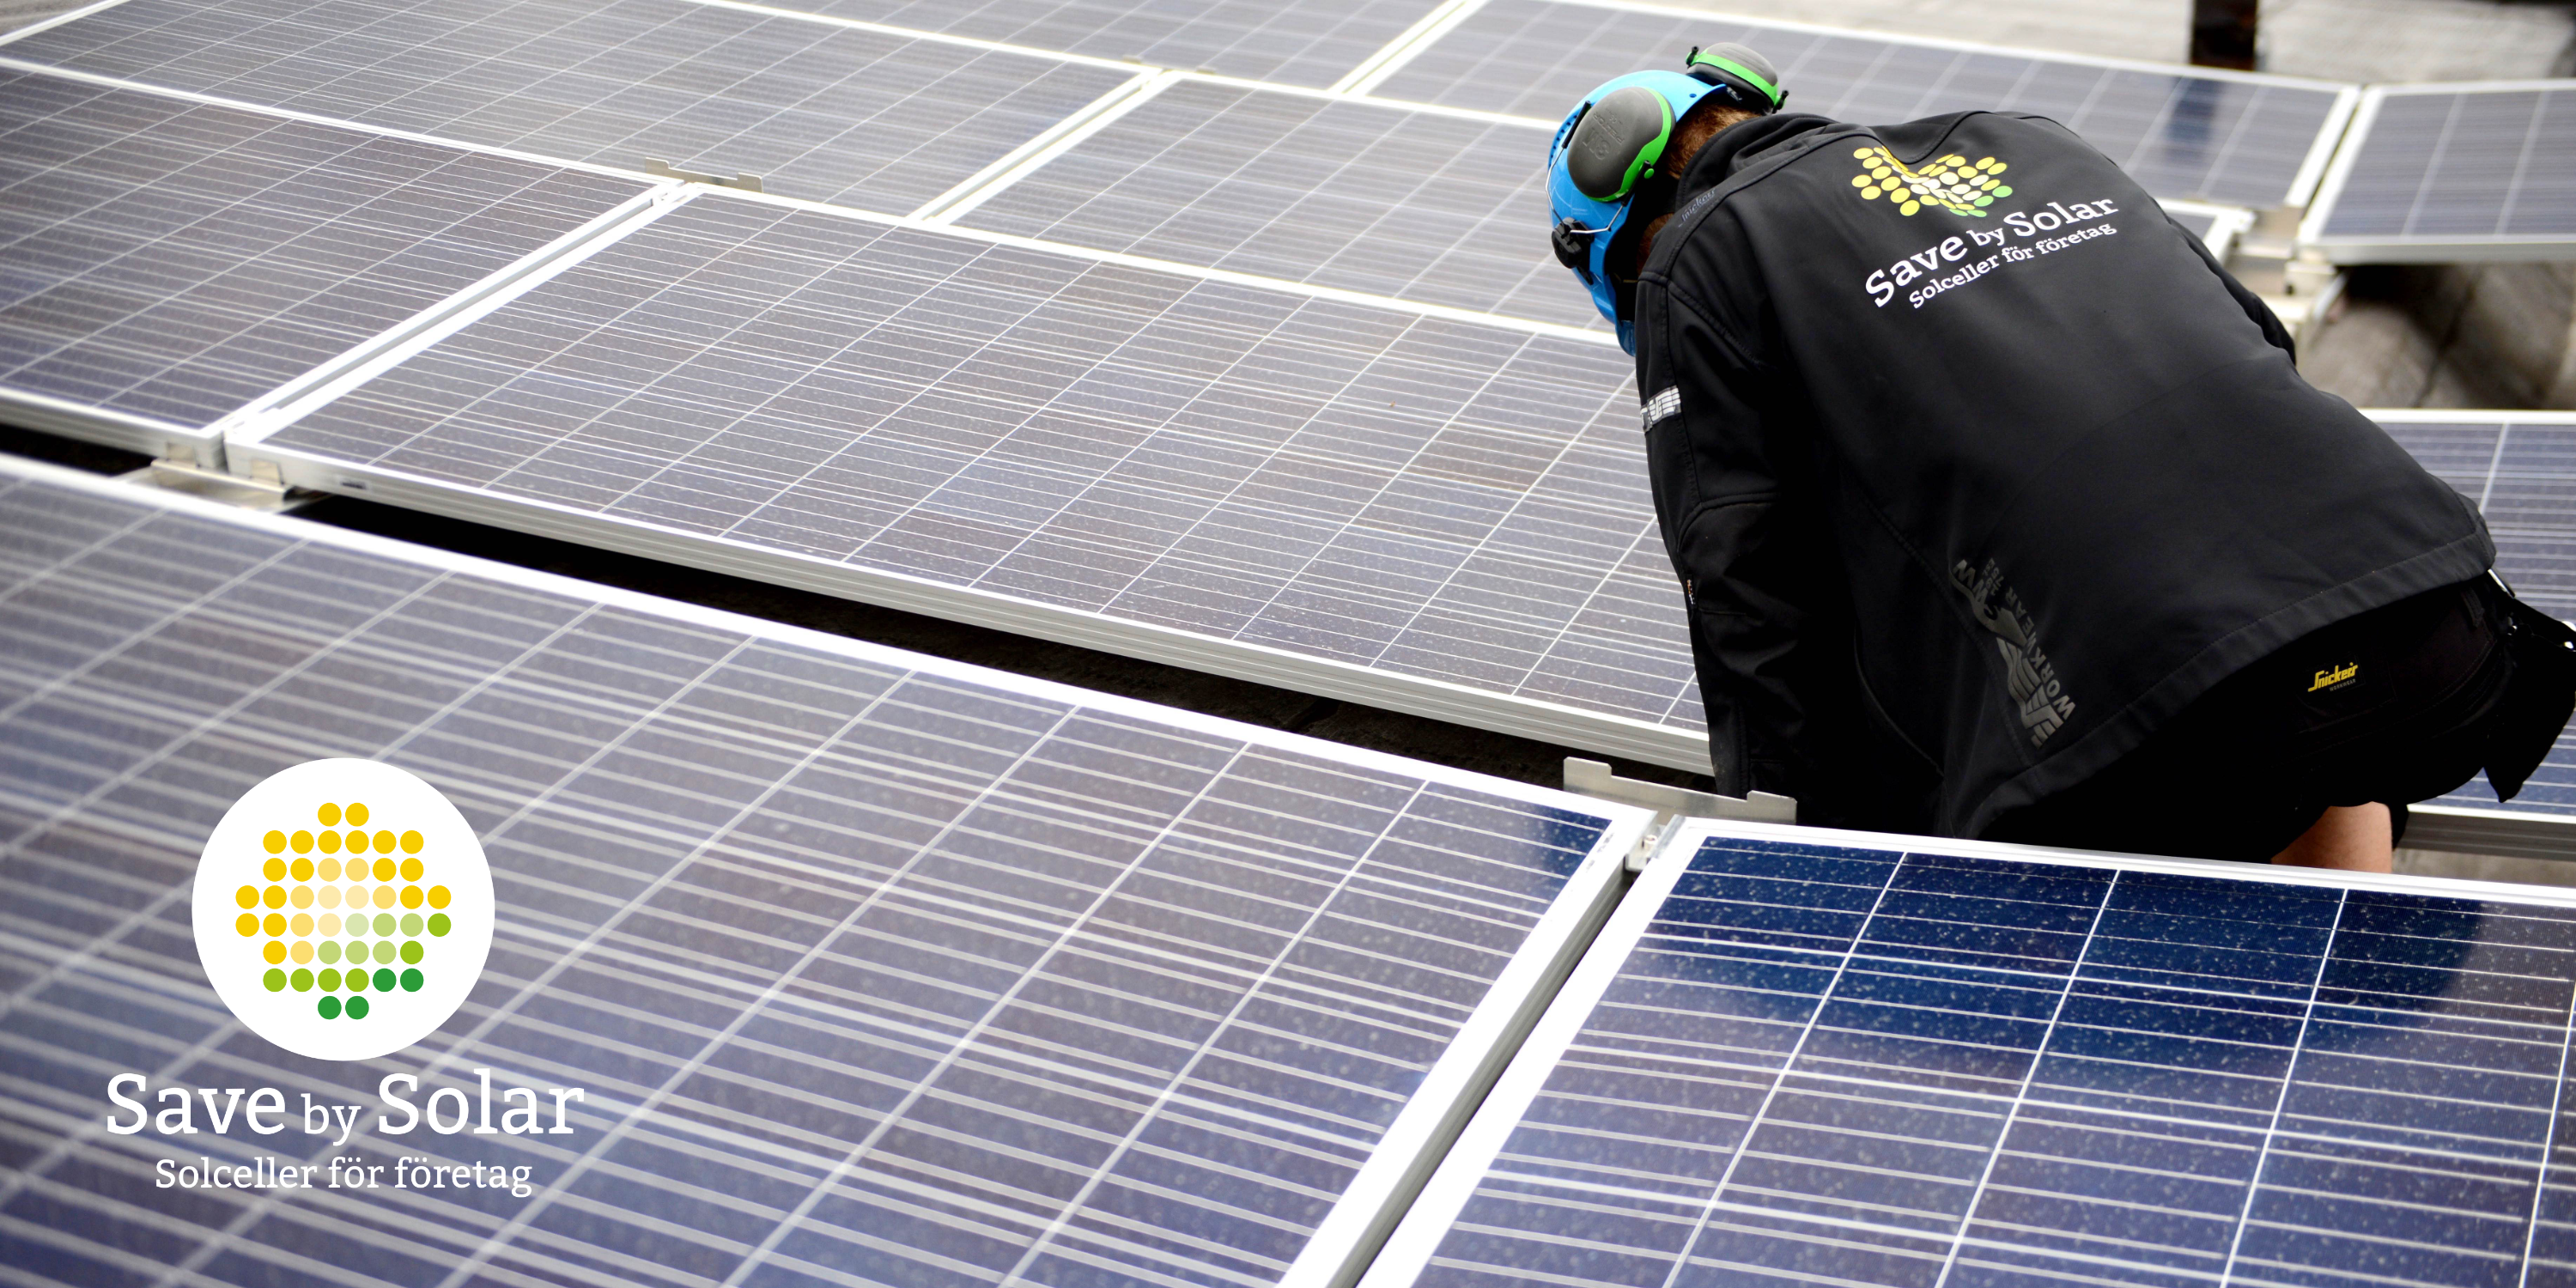 En installatör från Save by Solar installerar solceller i en solcellsanläggning